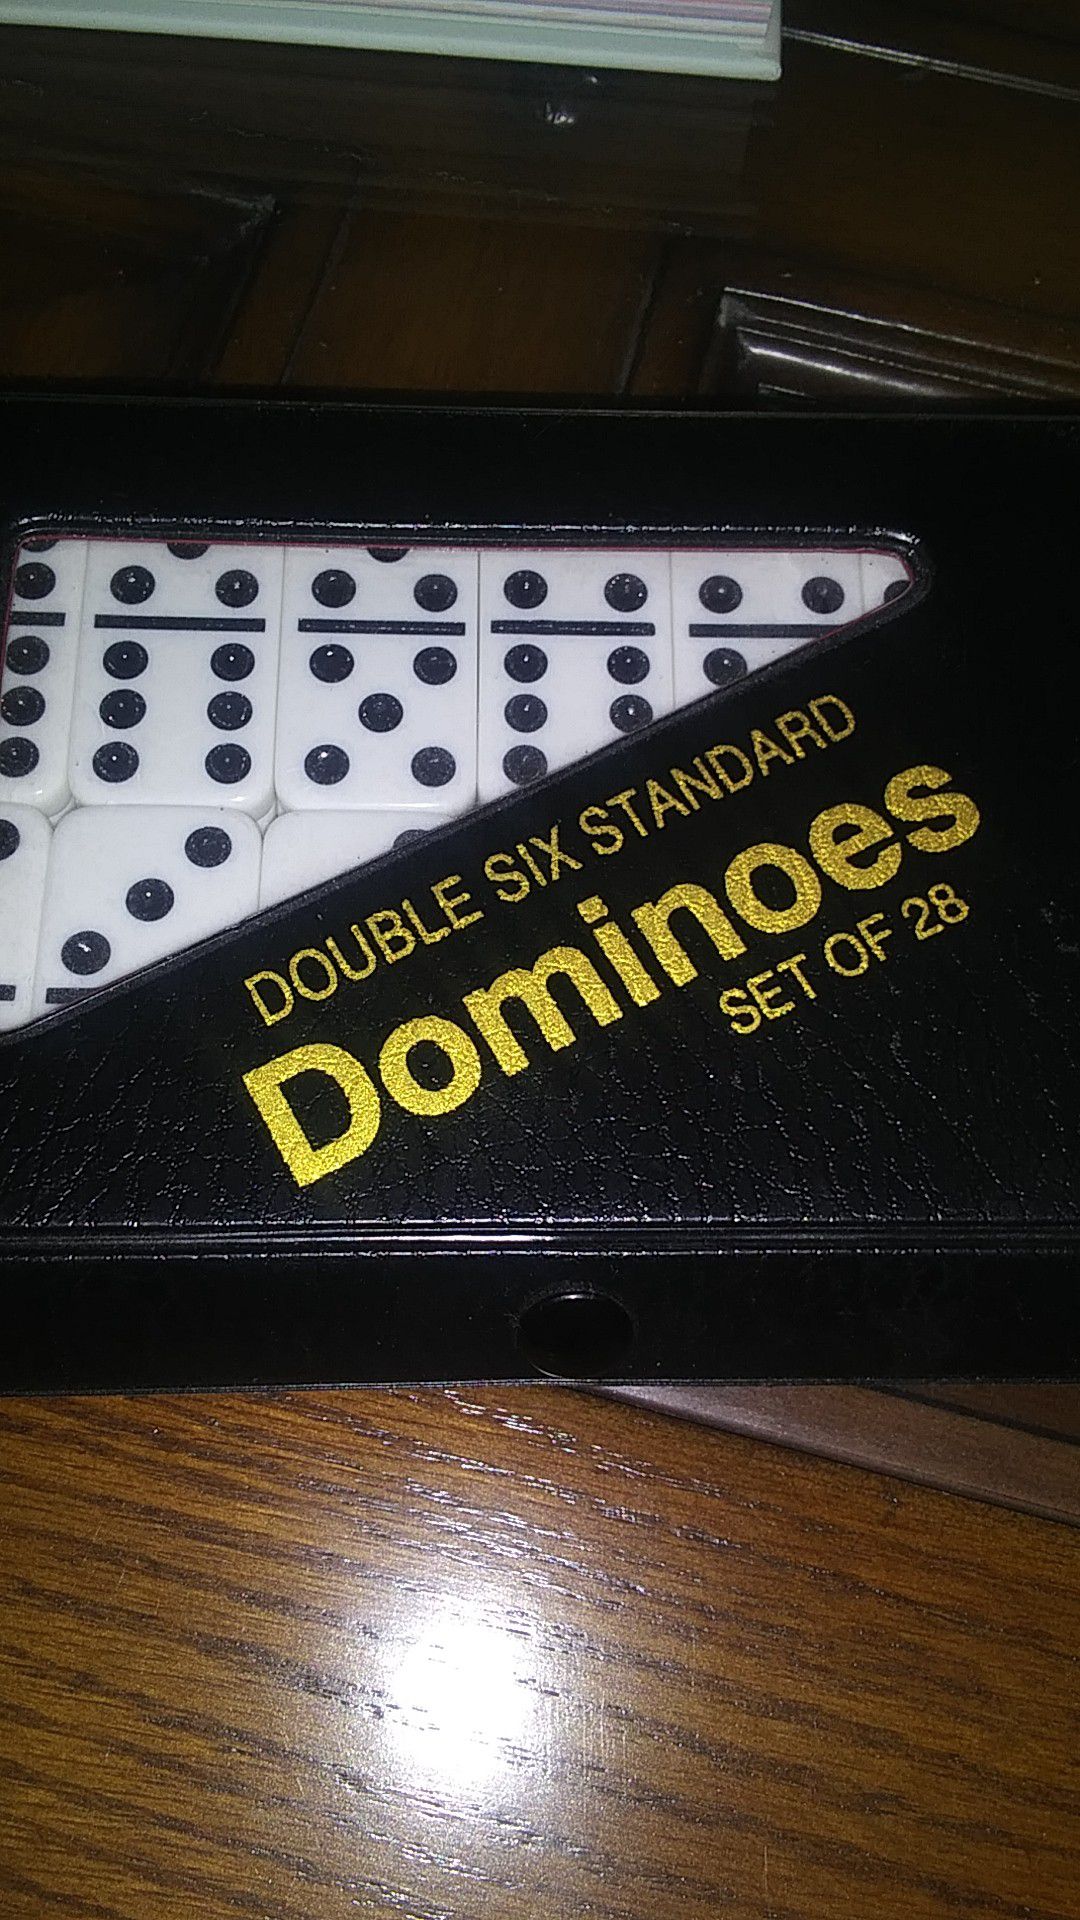 Dominoes set of 28